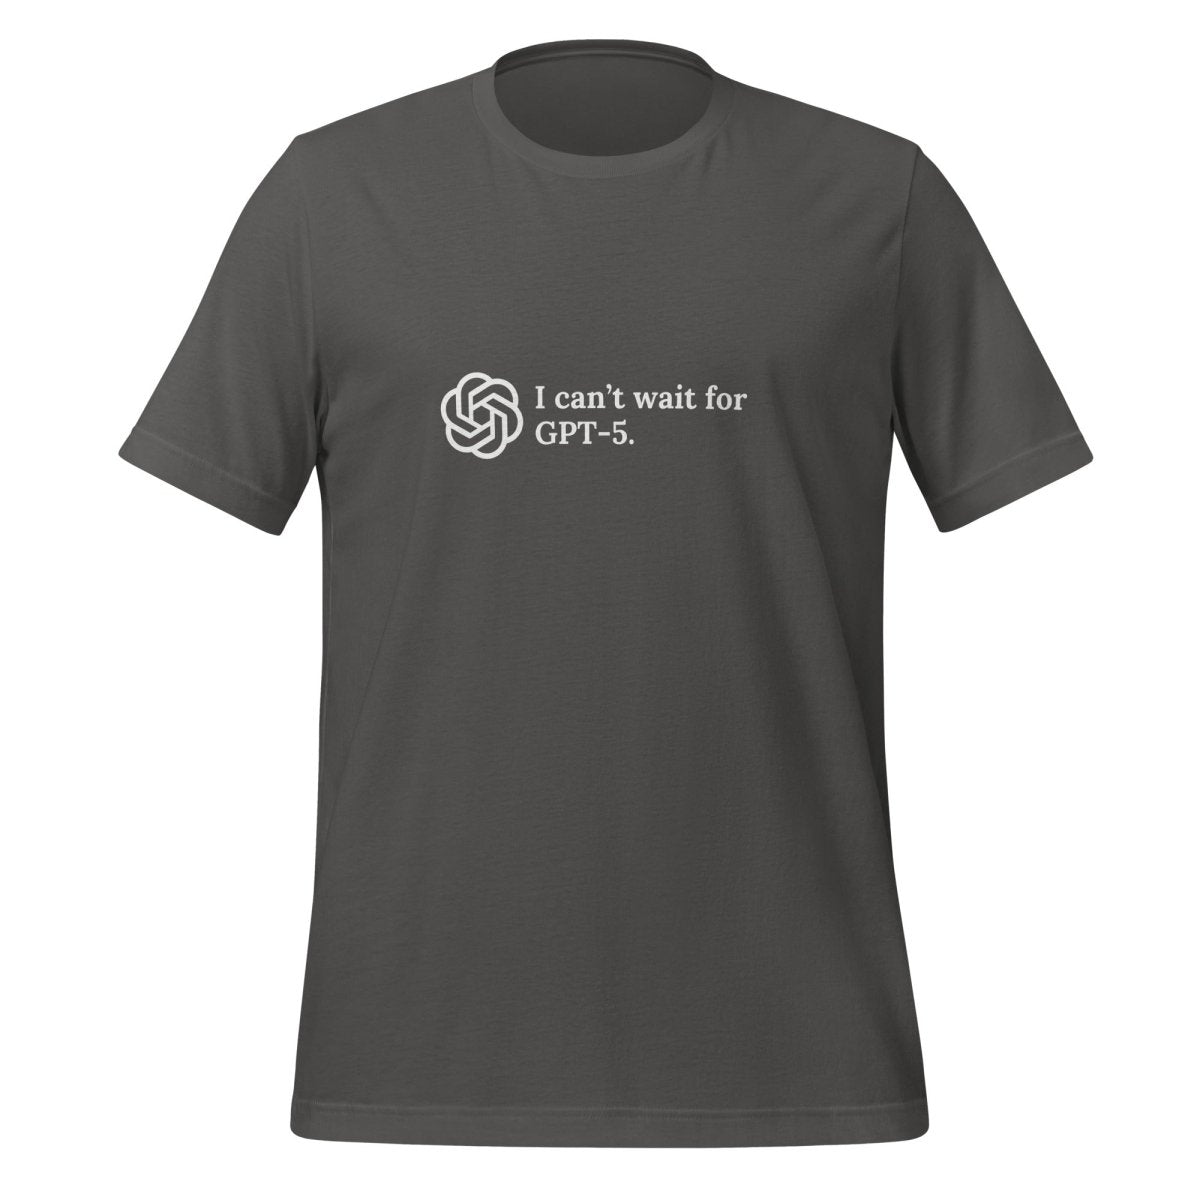 I can't wait for GPT - 5. T - Shirt (unisex) - Asphalt - AI Store